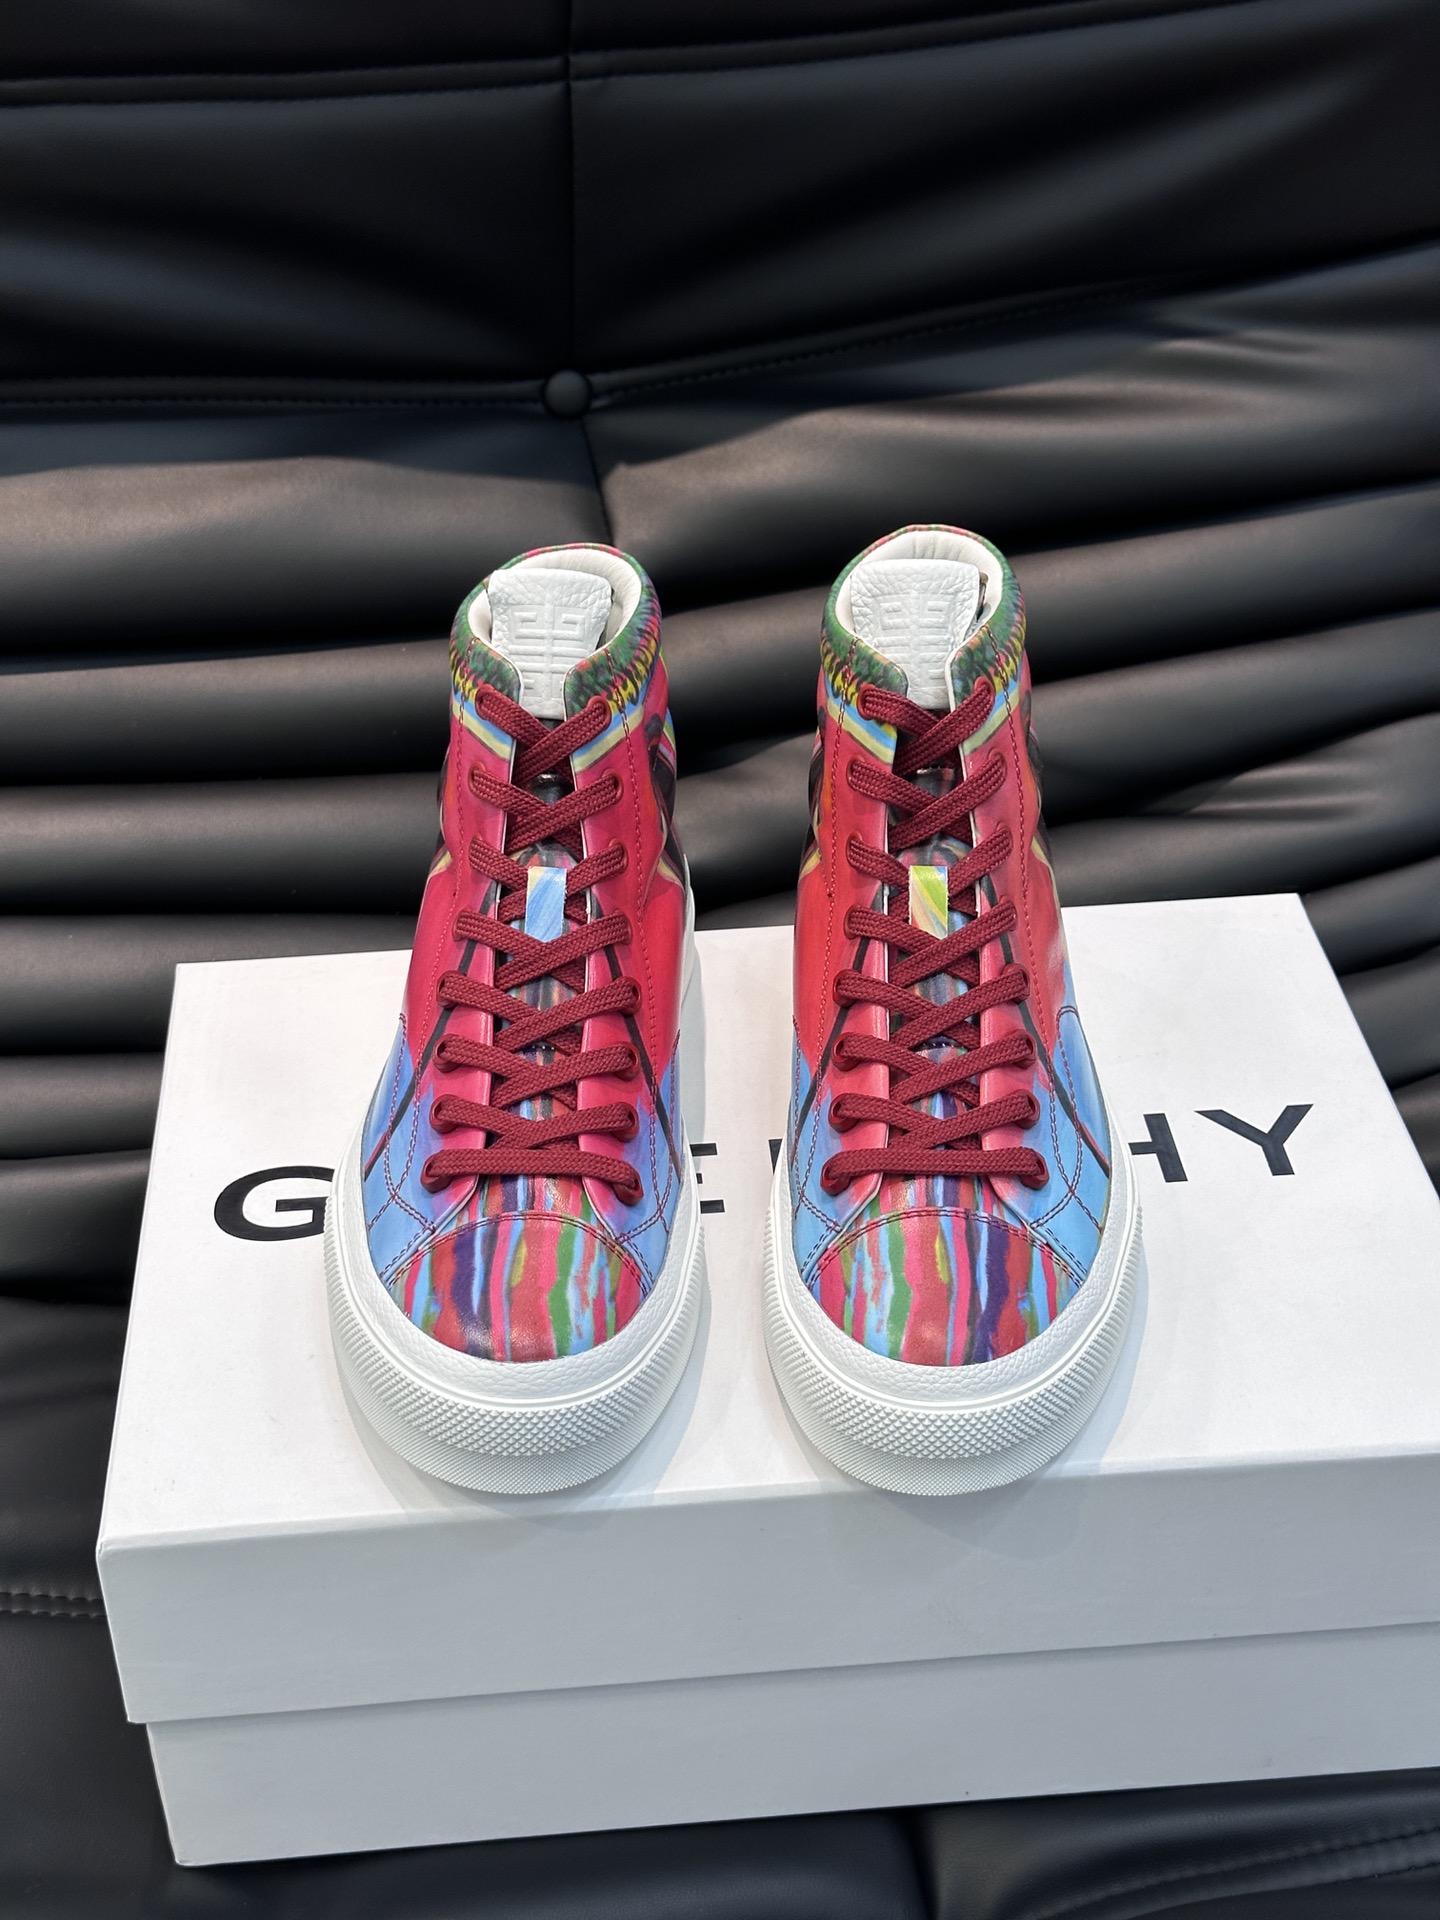 Gv*y全新GIV1男士高帮休闲鞋进口头层牛皮质感满满3D打印牛皮透气舒适原版鞋底上脚效果帅气有型简约时